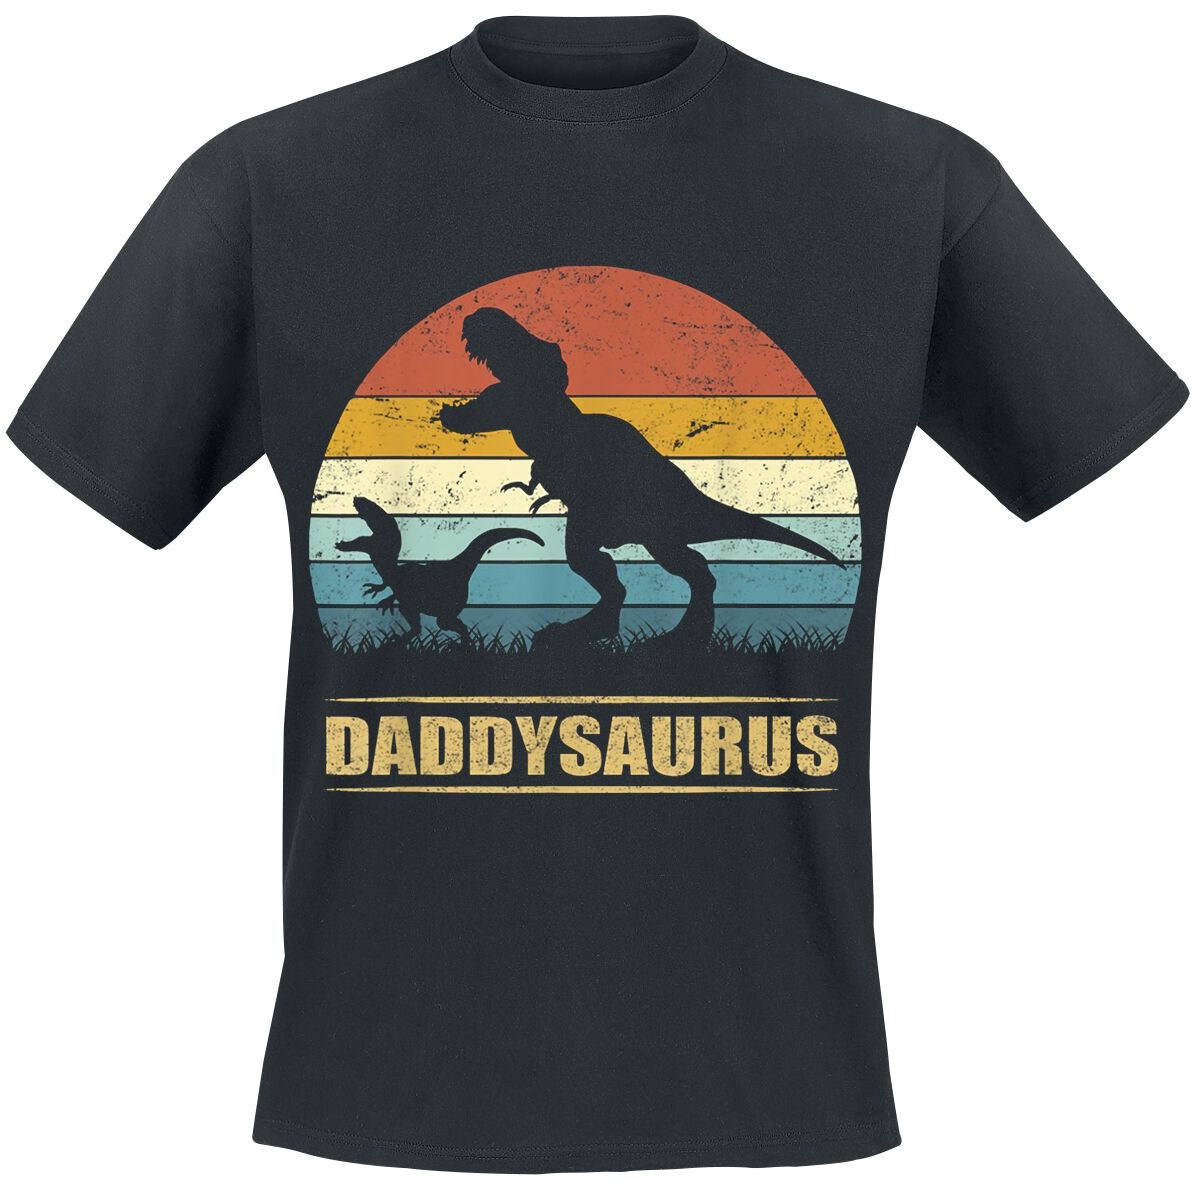 Familie & Freunde T-Shirt - Daddysaurus 3 - S bis 4XL - für Männer - Größe M - schwarz